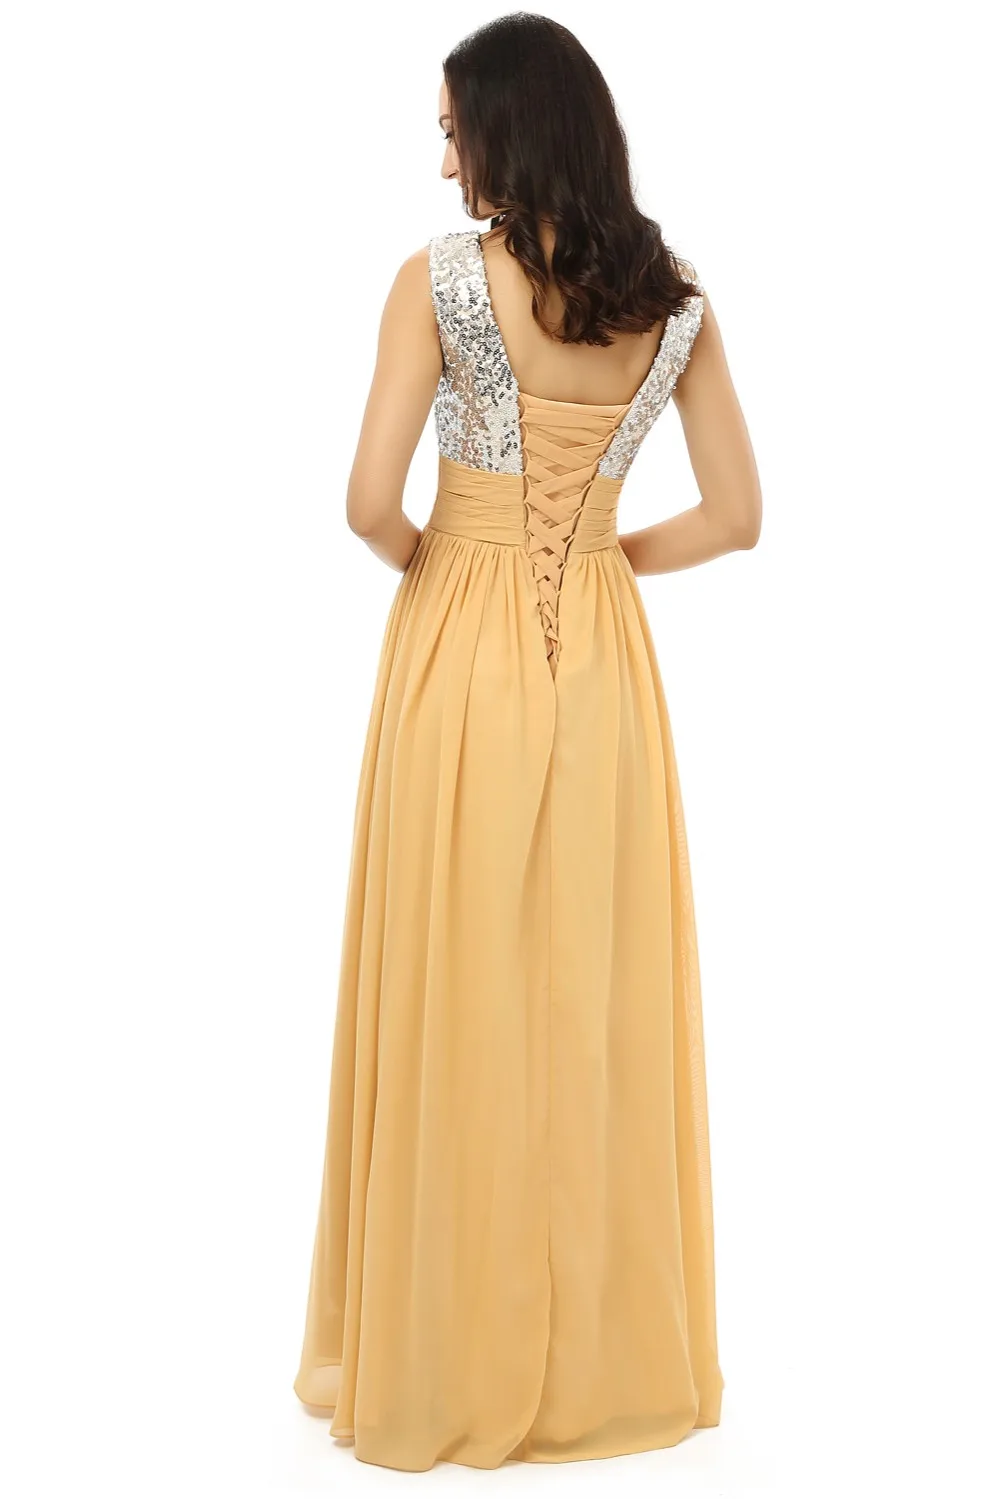 HVVLF элегантные вечерние платья 2019 трапециевидной формы с v-образным вырезом Золотой шифон Squins длинное вечернее платье выпускное платье